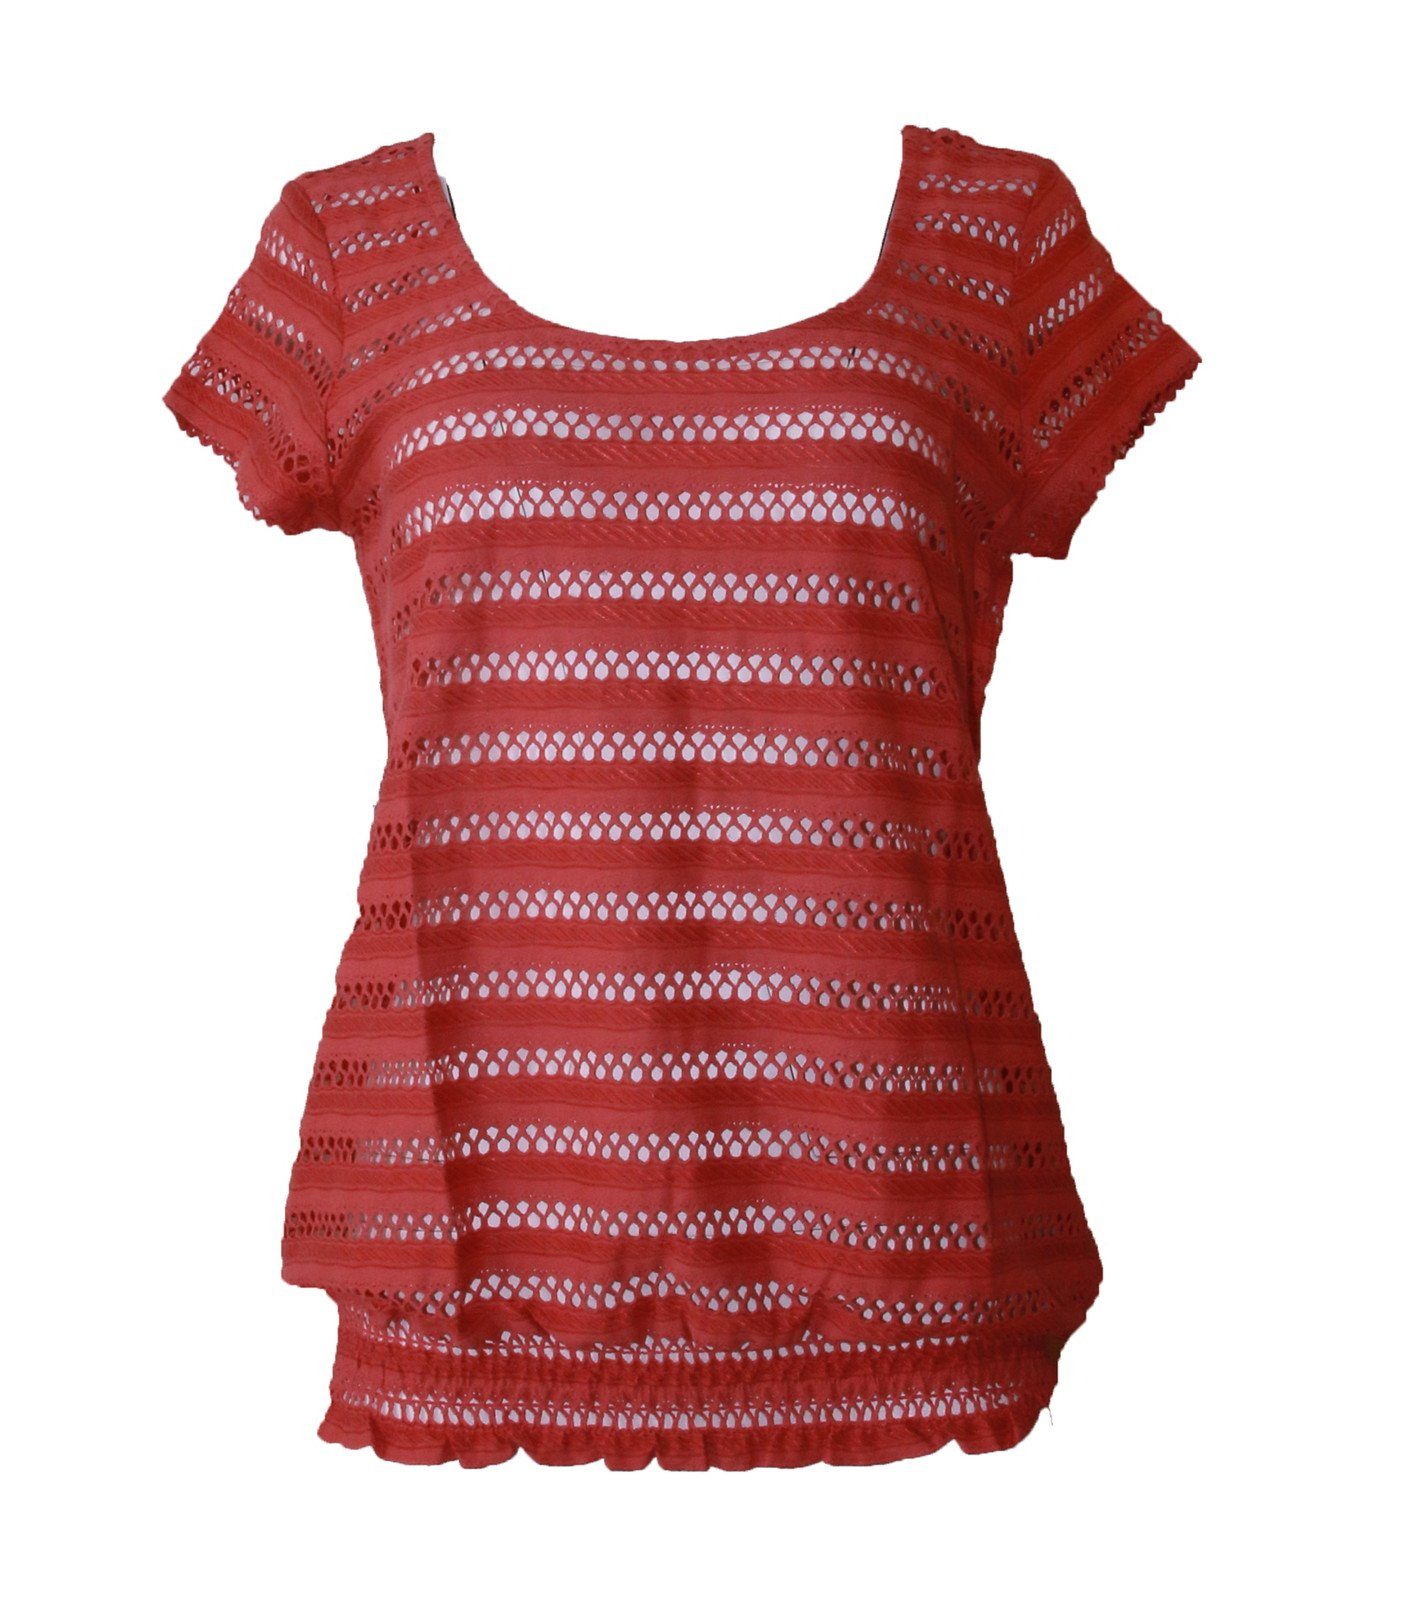 TOM TAILOR Rundhalsshirt »TOM TAILOR Rundhals-Shirt angesagtes Damen T-Shirt  mit Streifen- und Lochmuster Sommer-Shirt Rot« online kaufen | OTTO